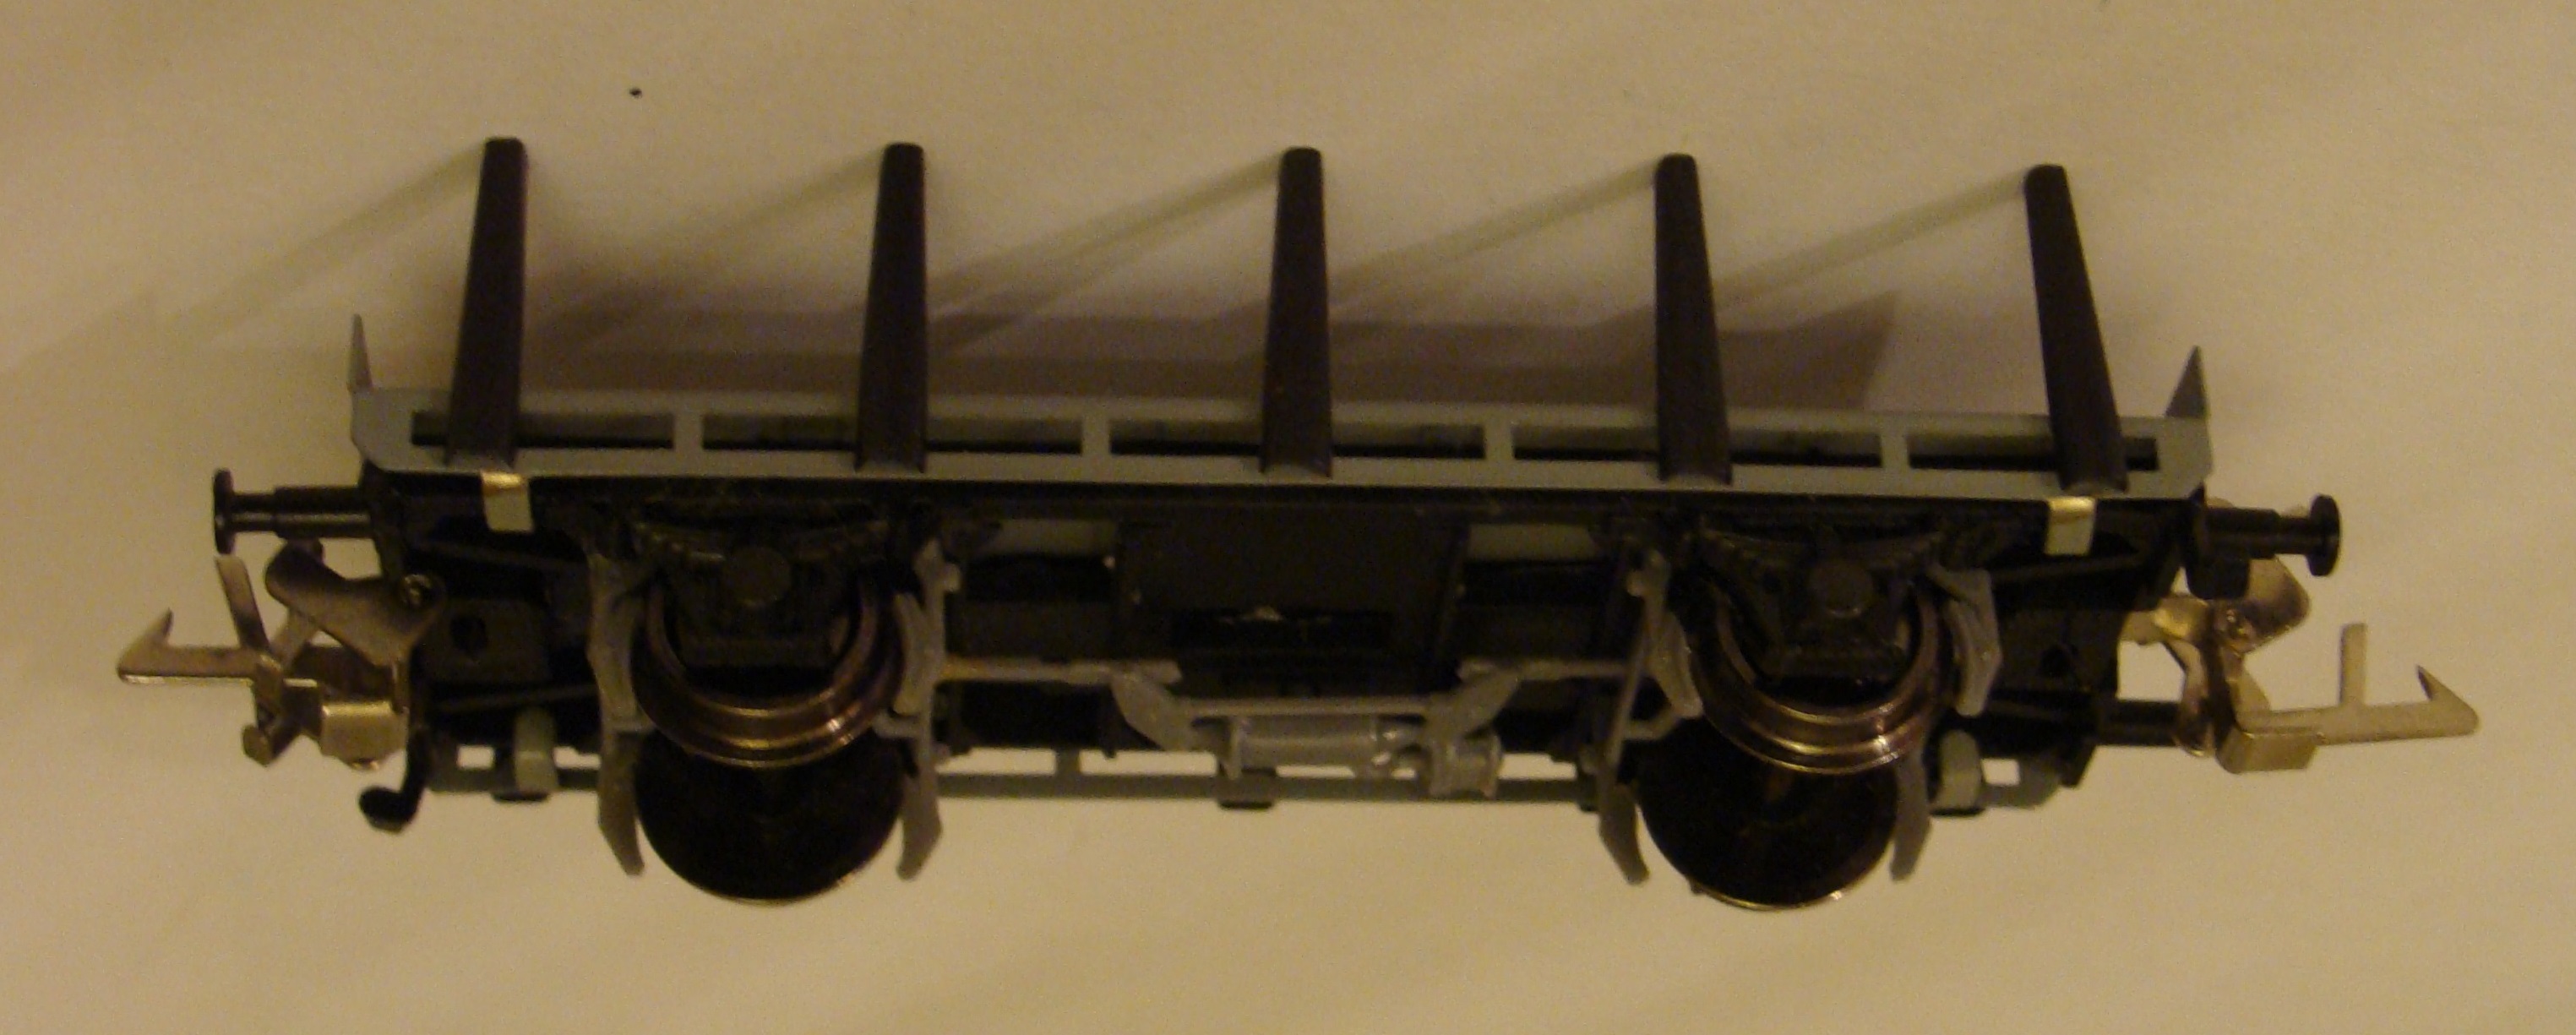 Модель платформы  металлической площадкой и крепежными стойками